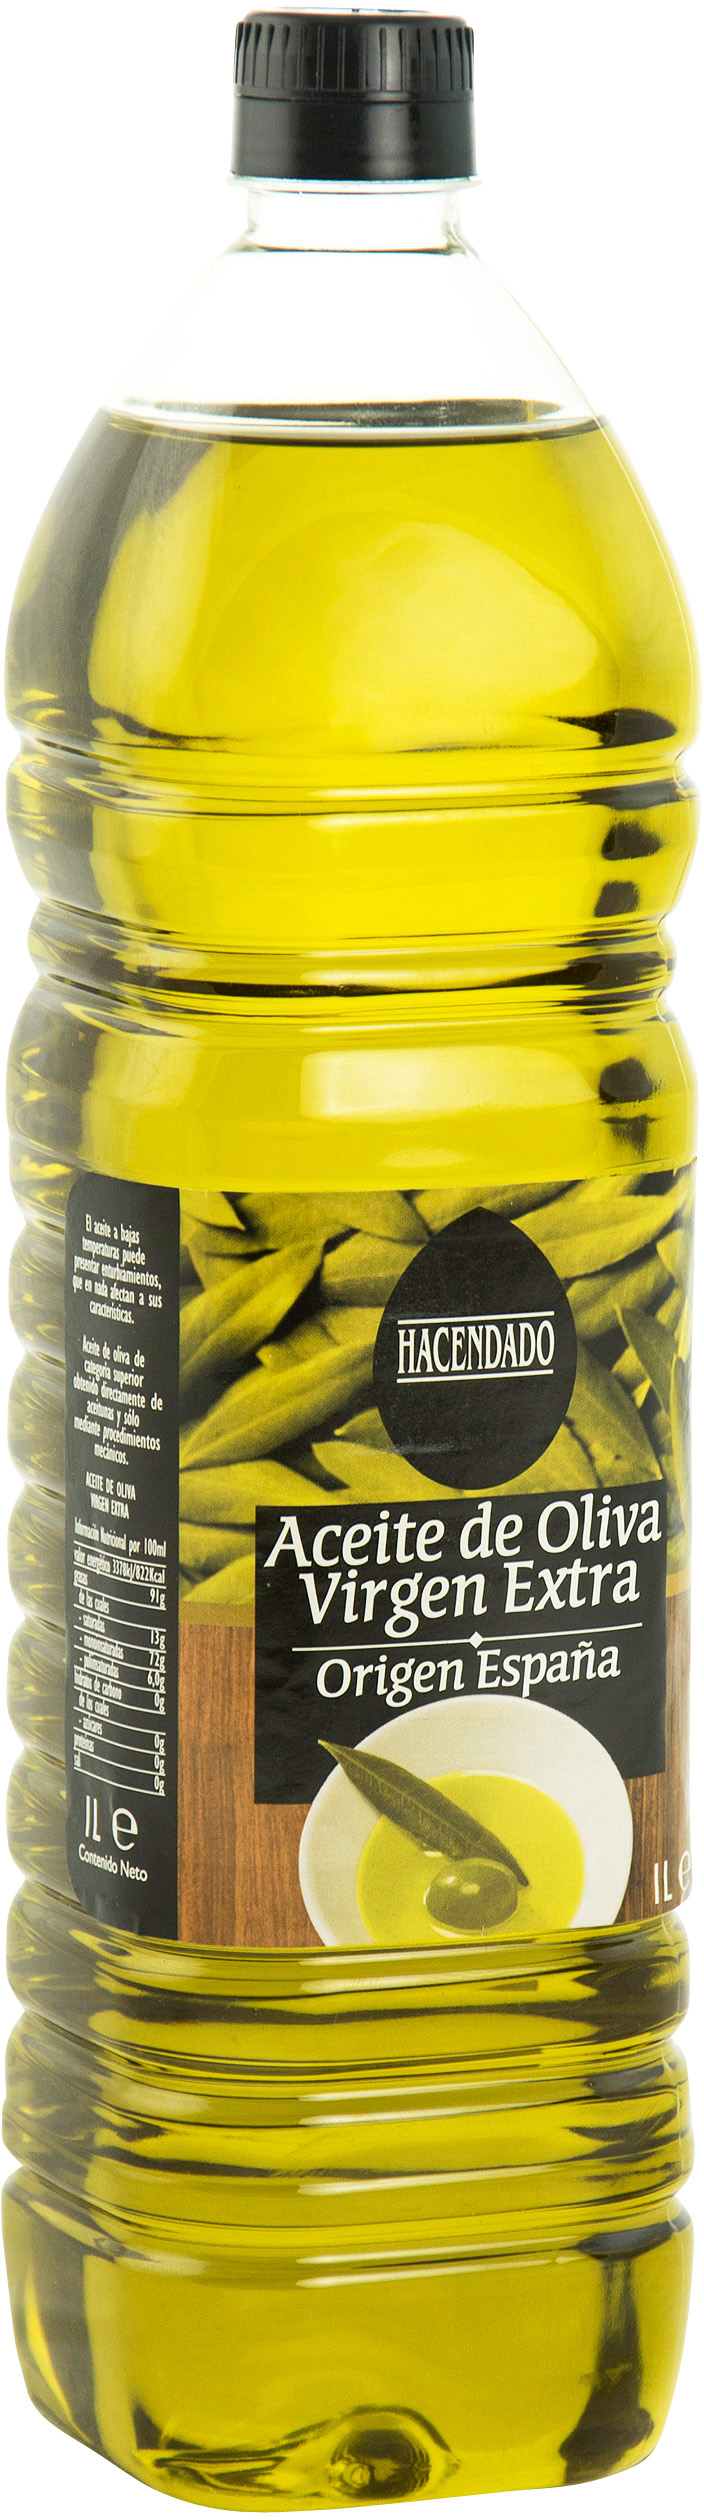 Aceite de oliva virgen extra hacendado